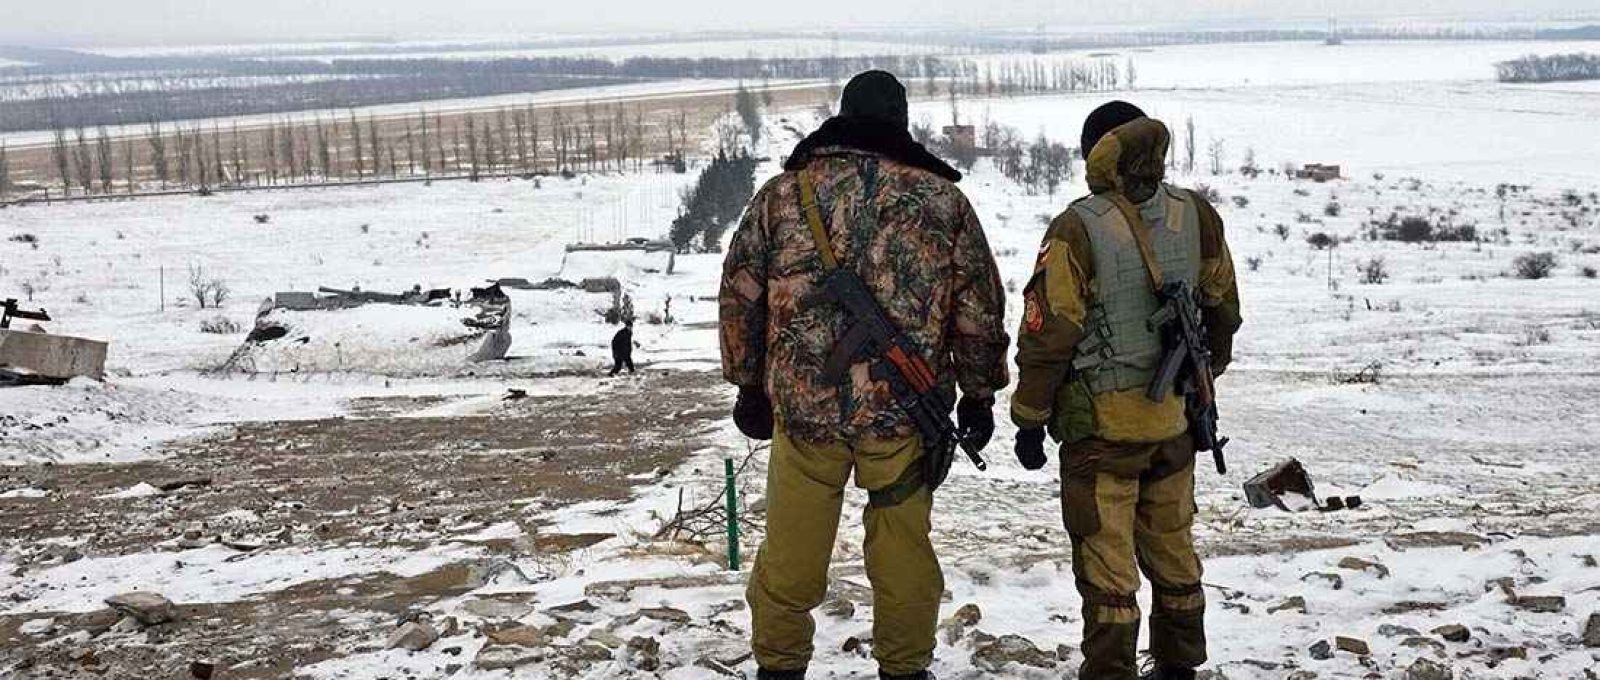 Combatentes separatistas apoiados pela Rússia no leste da Ucrânia em 2014 (Eric Feferberg/AFP).